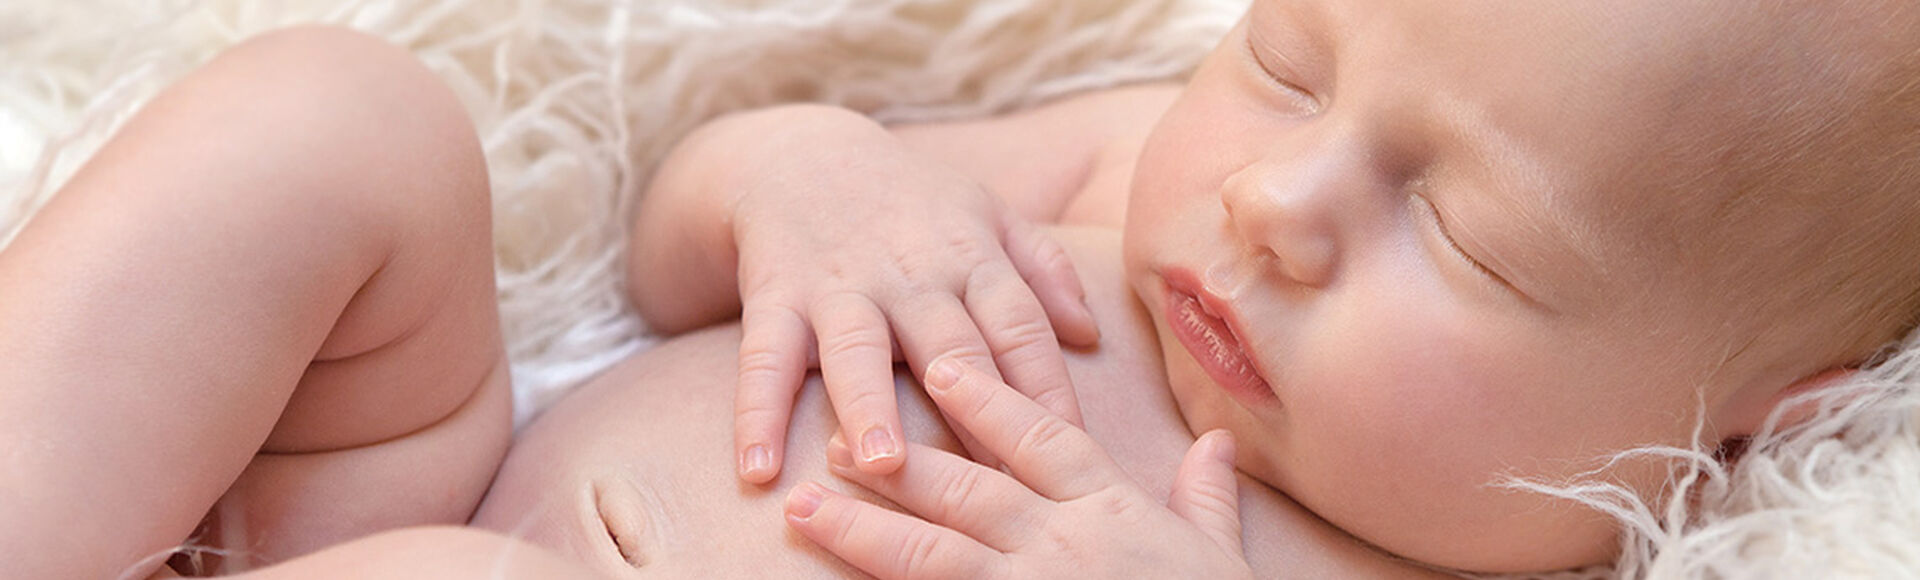 Preparação cordão umbilical de um recém-nascido